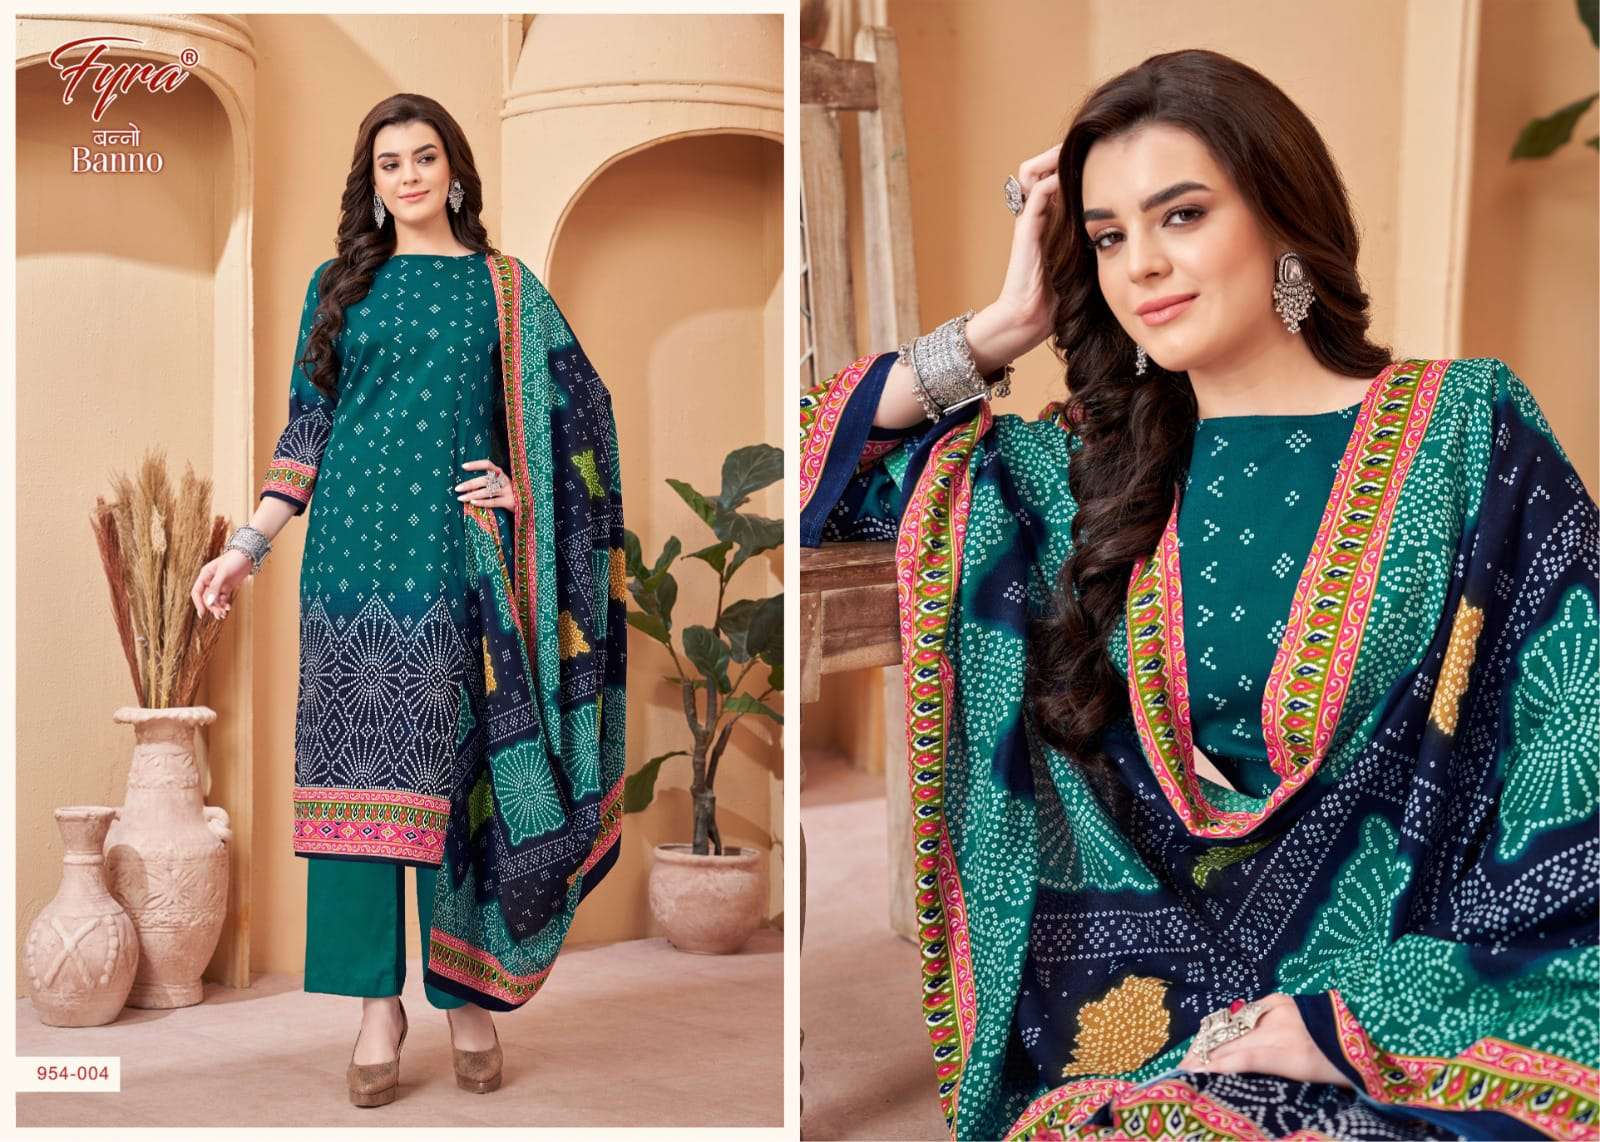 fyra designing banno latest wedding wear pakistani salwar kameez at wholesale price surat